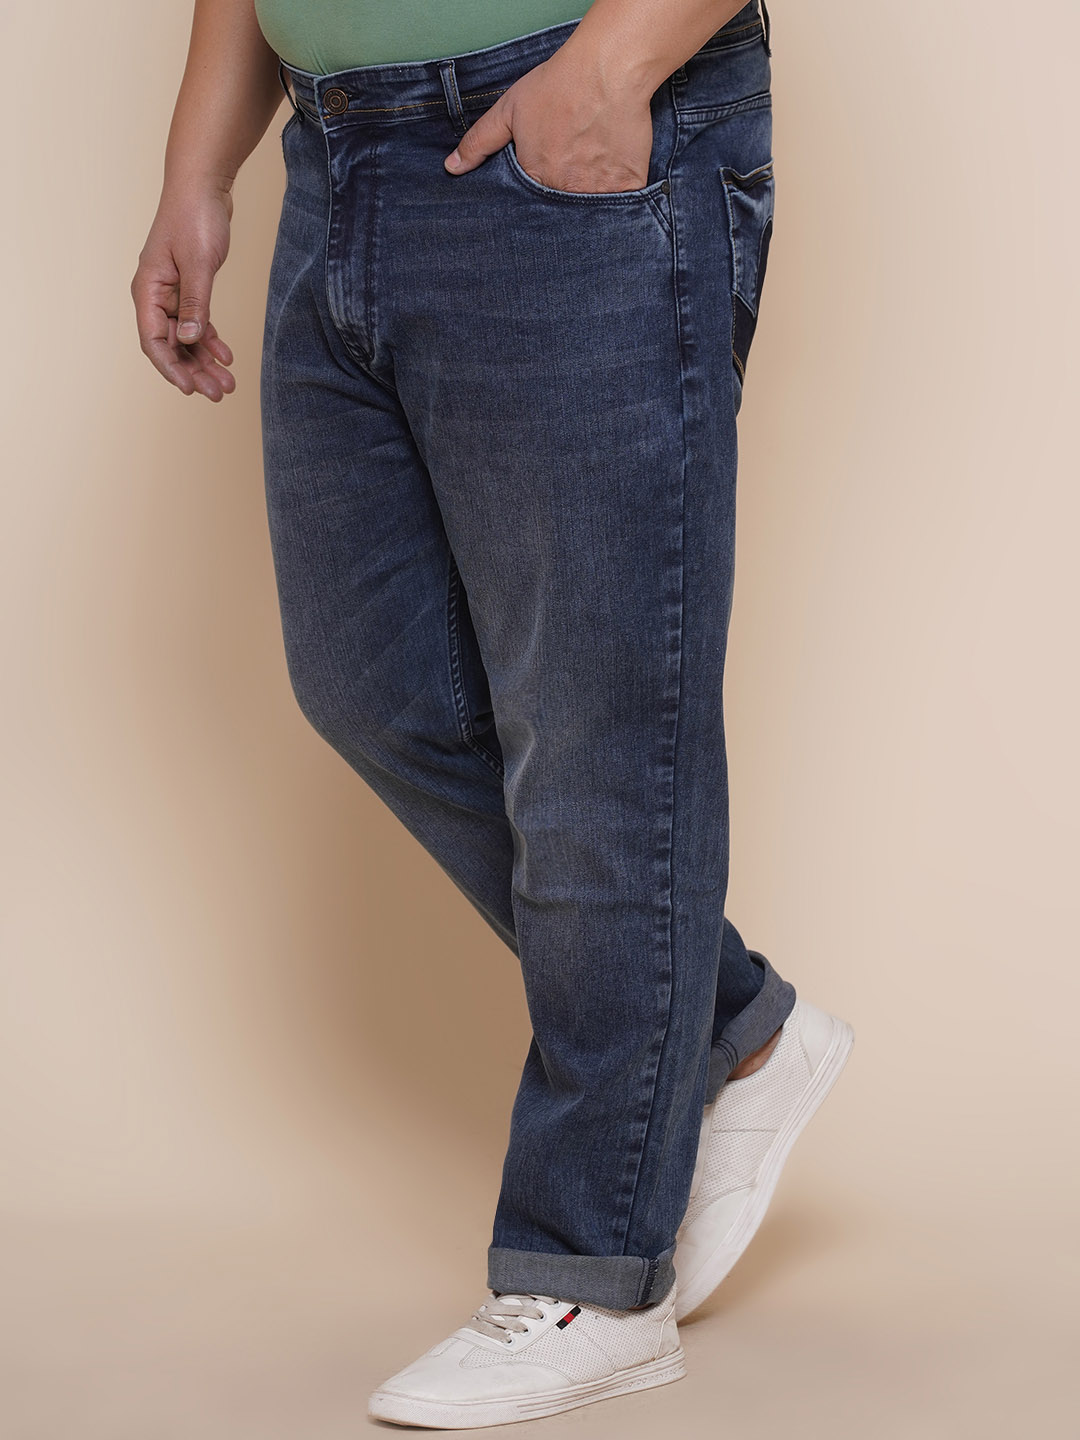 bottomwear/jeans/JPJ12281/jpj12281-4.jpg